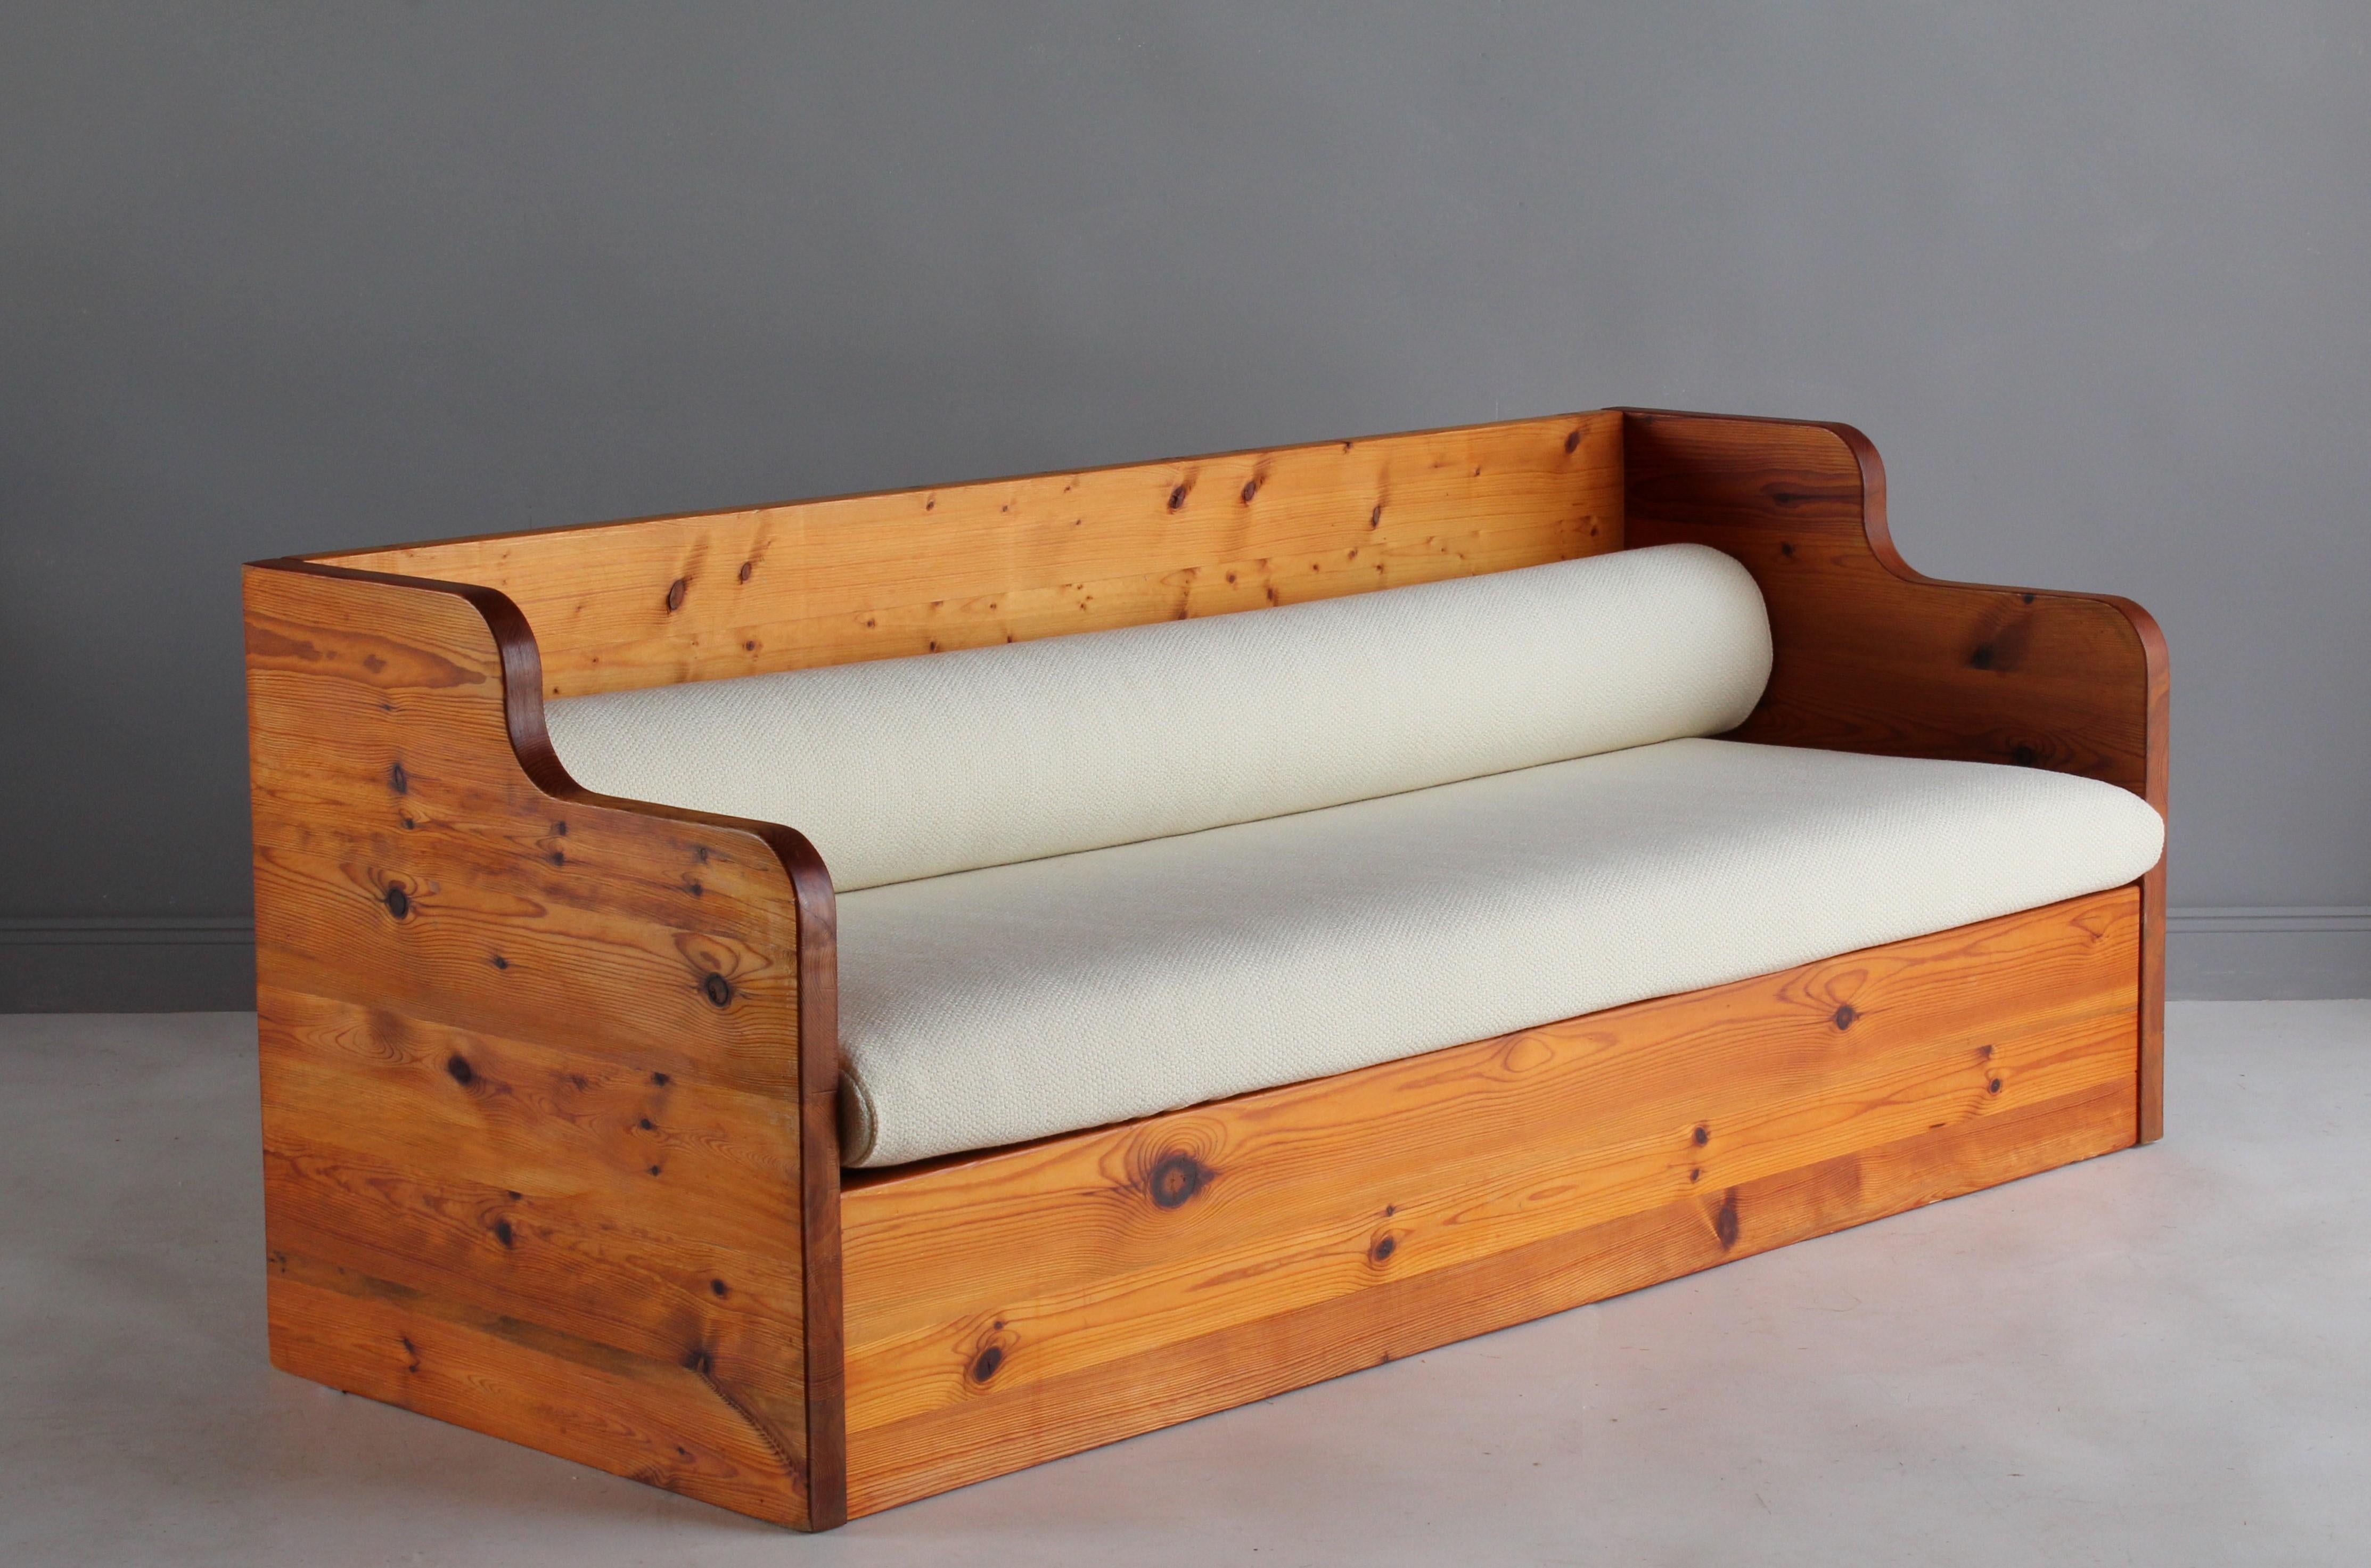 Ein modernes und minimalistisches Sofa im schwedischen Sportstugestil. Hergestellt aus massiven und gestapelten Kiefernholzbrettern. Produziert in den 1970er Jahren. Die Reinheit der Form unterstreicht die Schönheit des Materials. Sitz- und